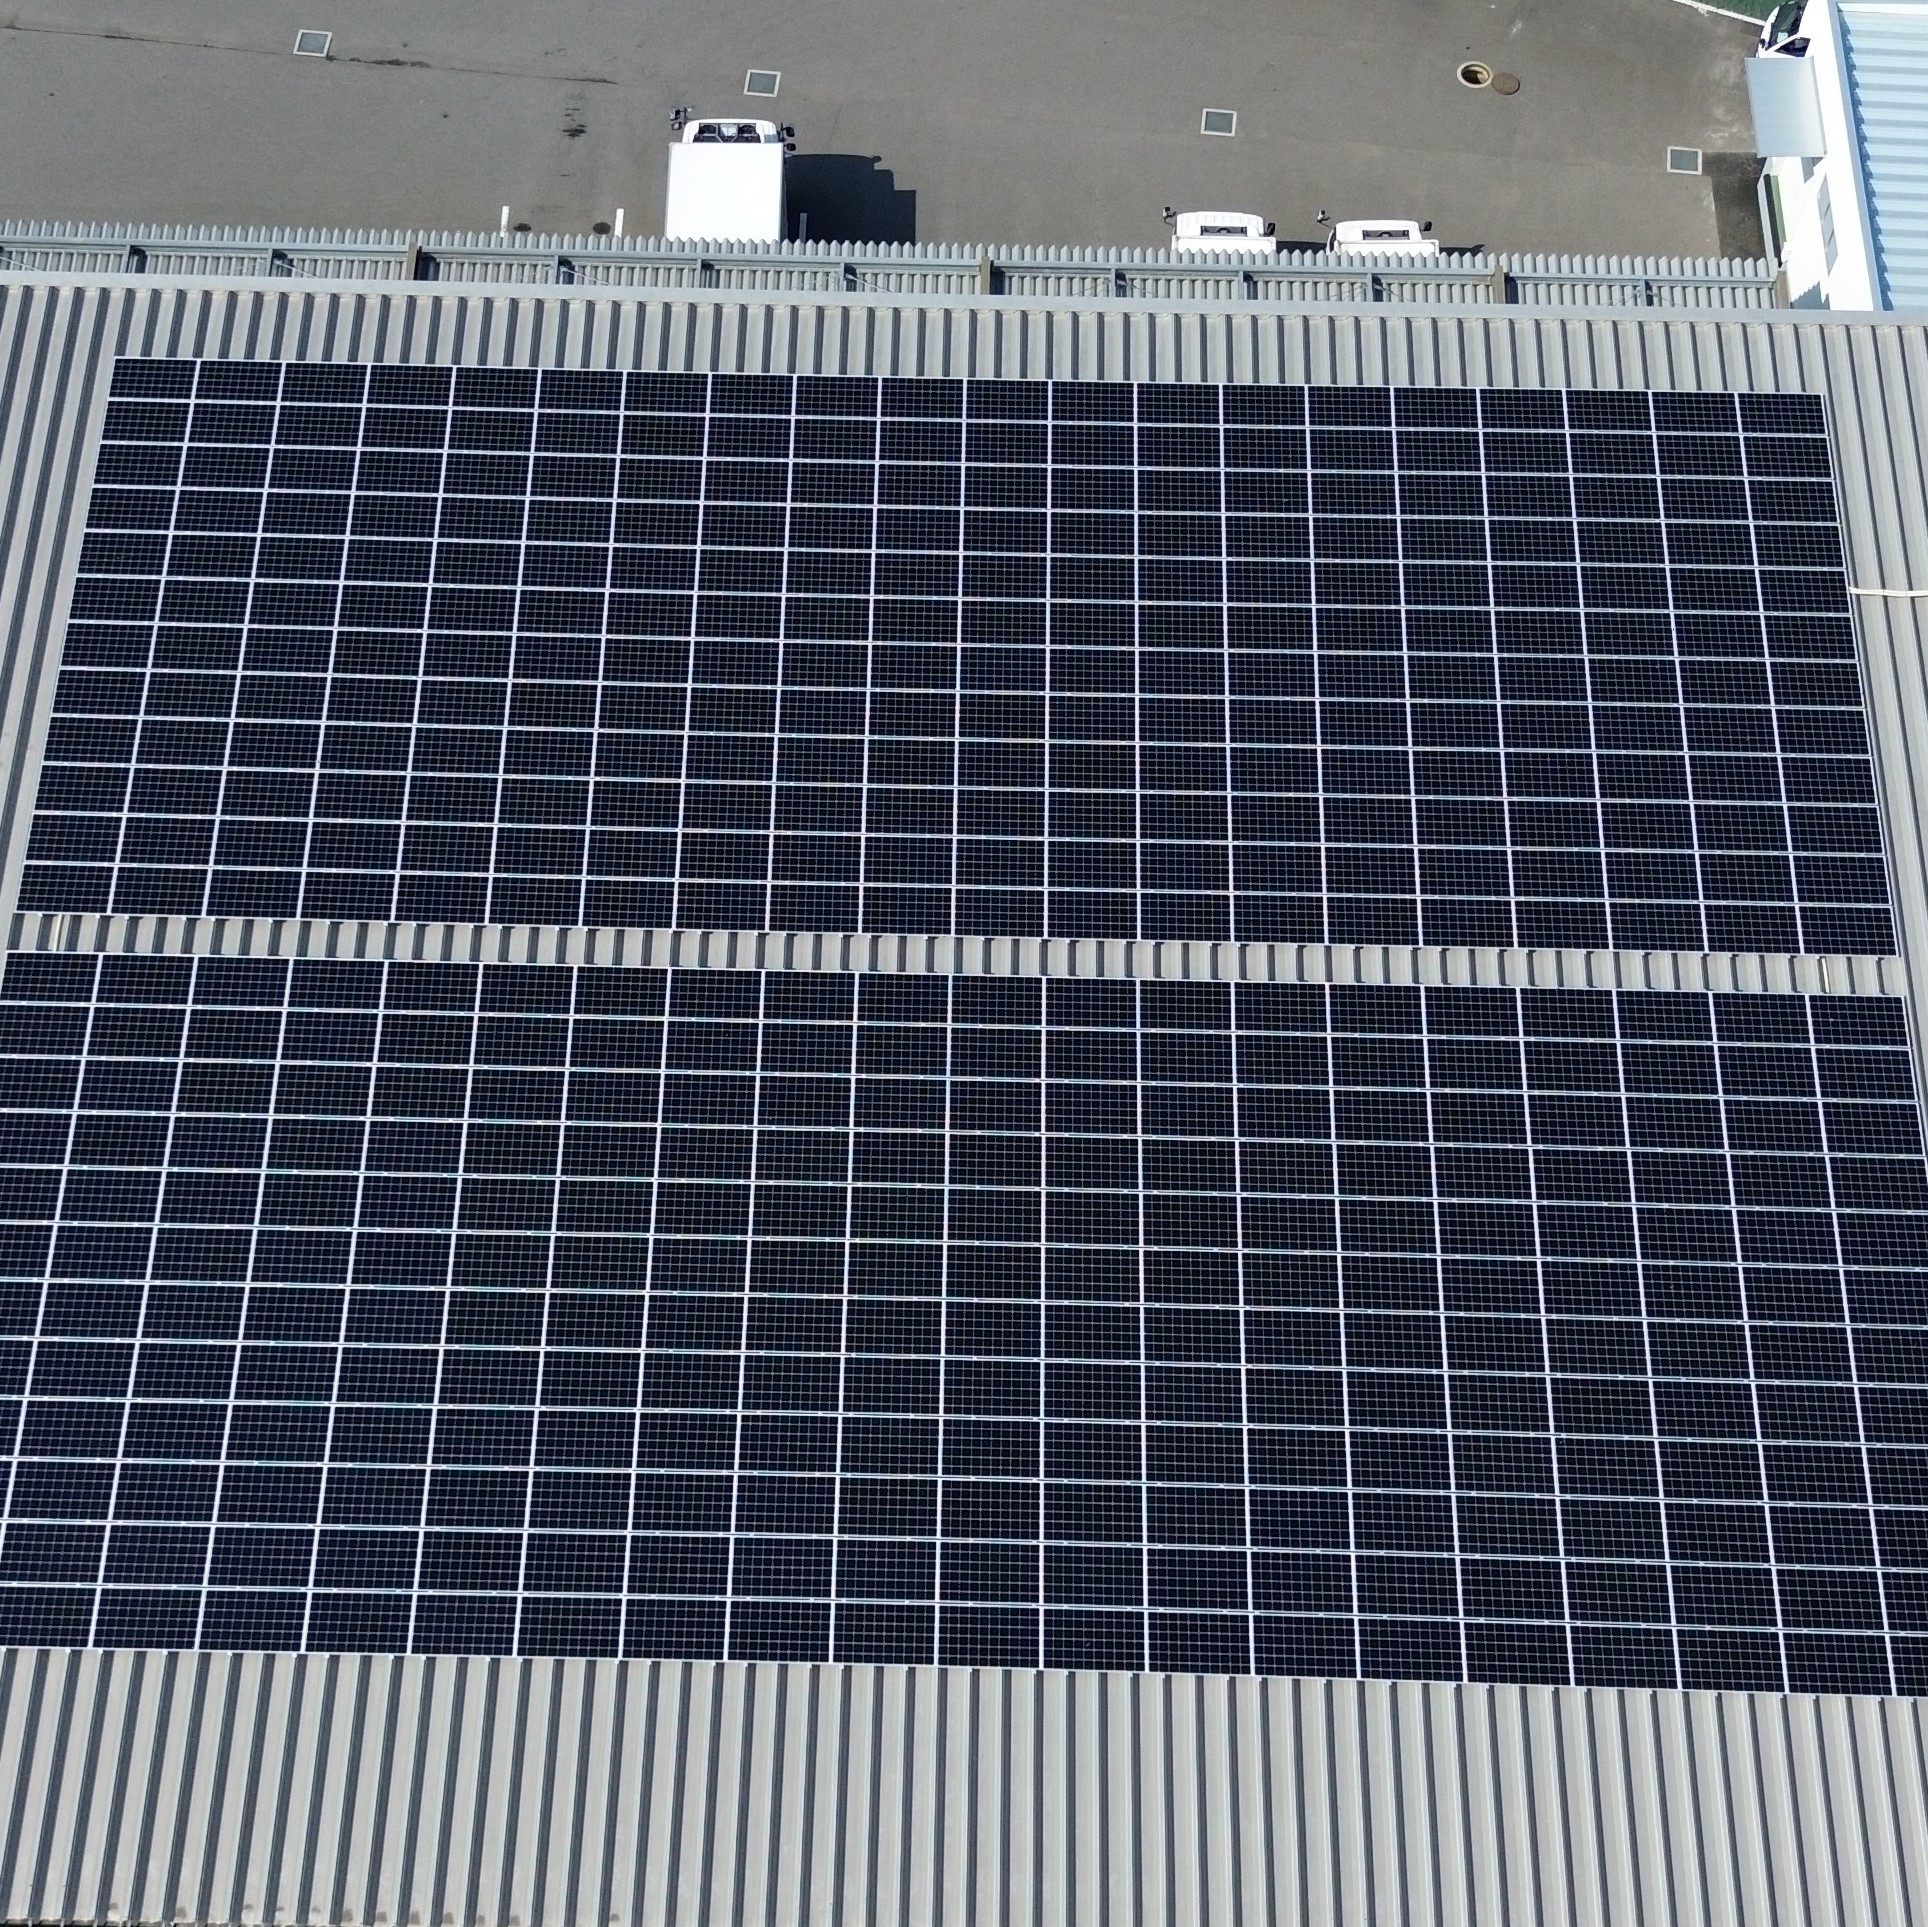 産業用太陽光発電システムの画像